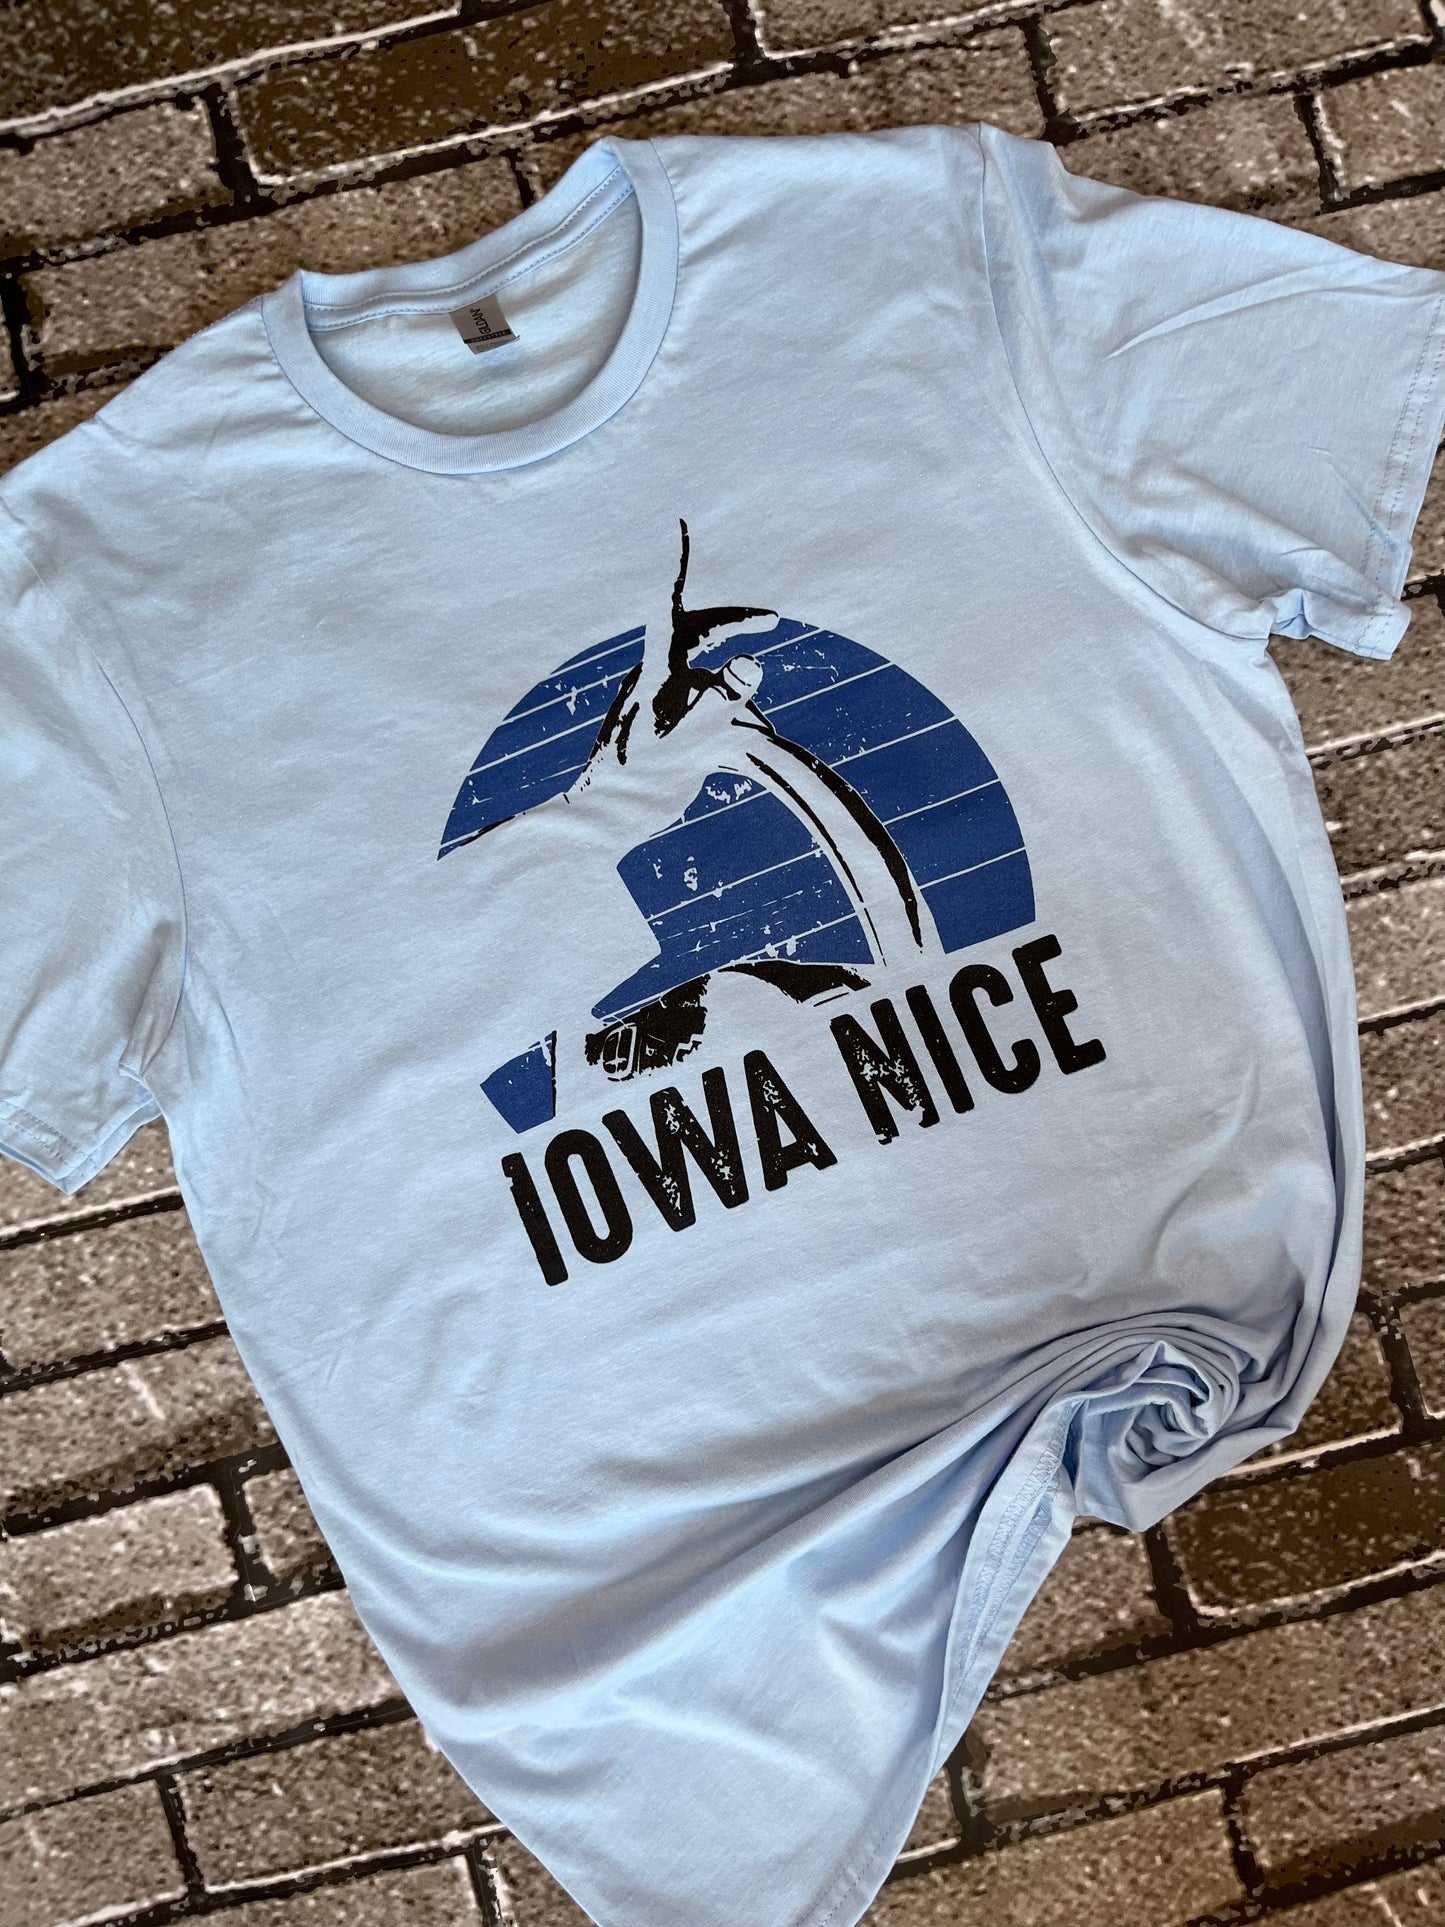 Iowa Nice Shirt